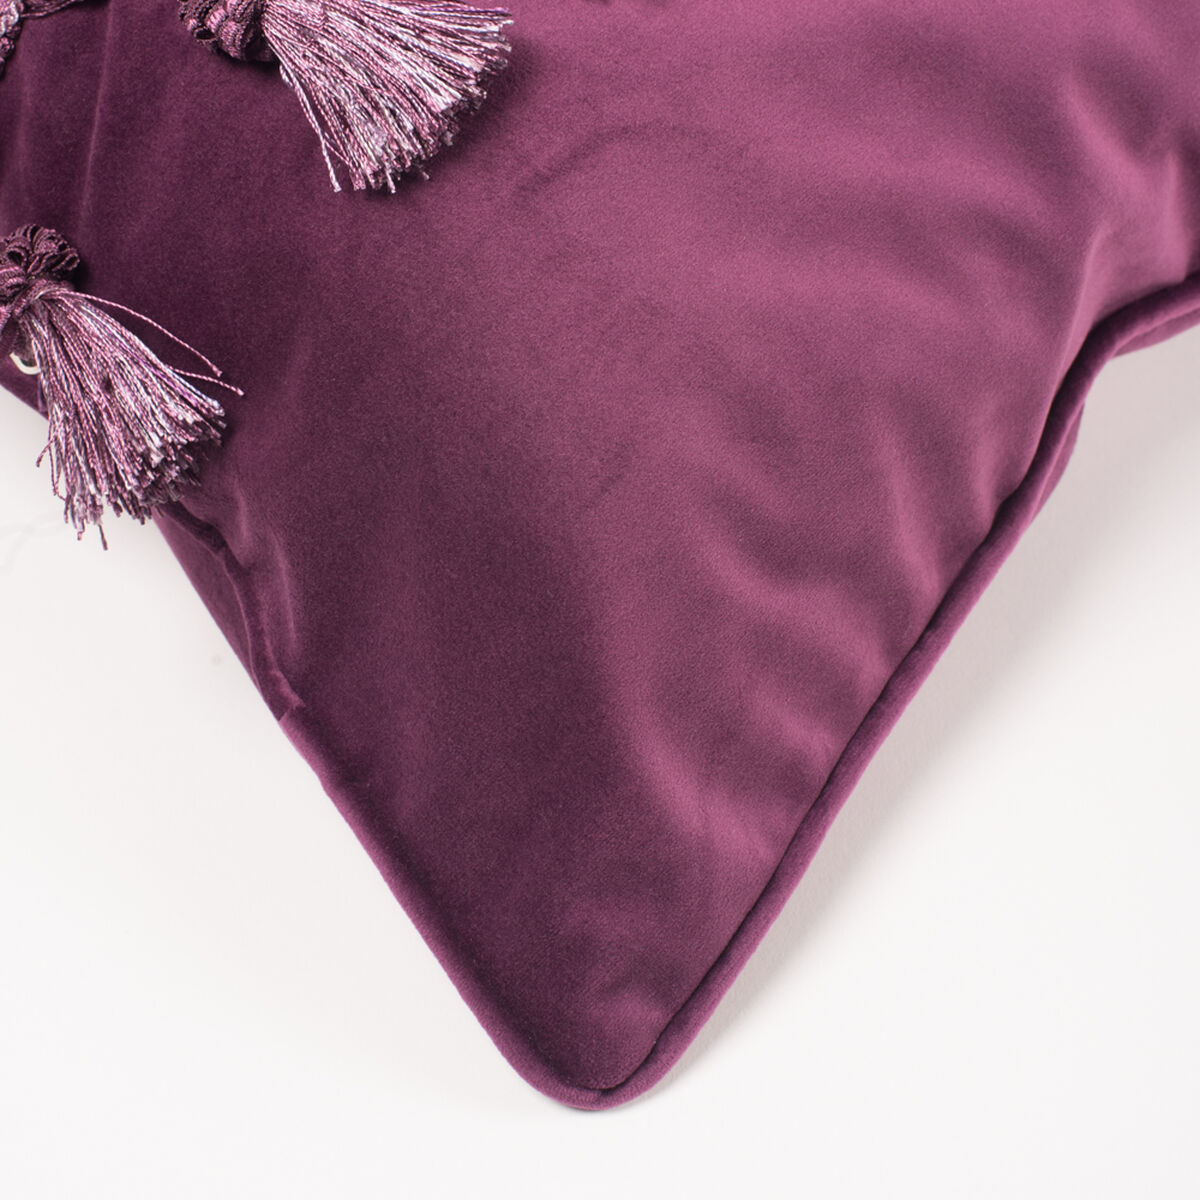 Cojín Velvet con Flecos Purple 45 x 45 cm